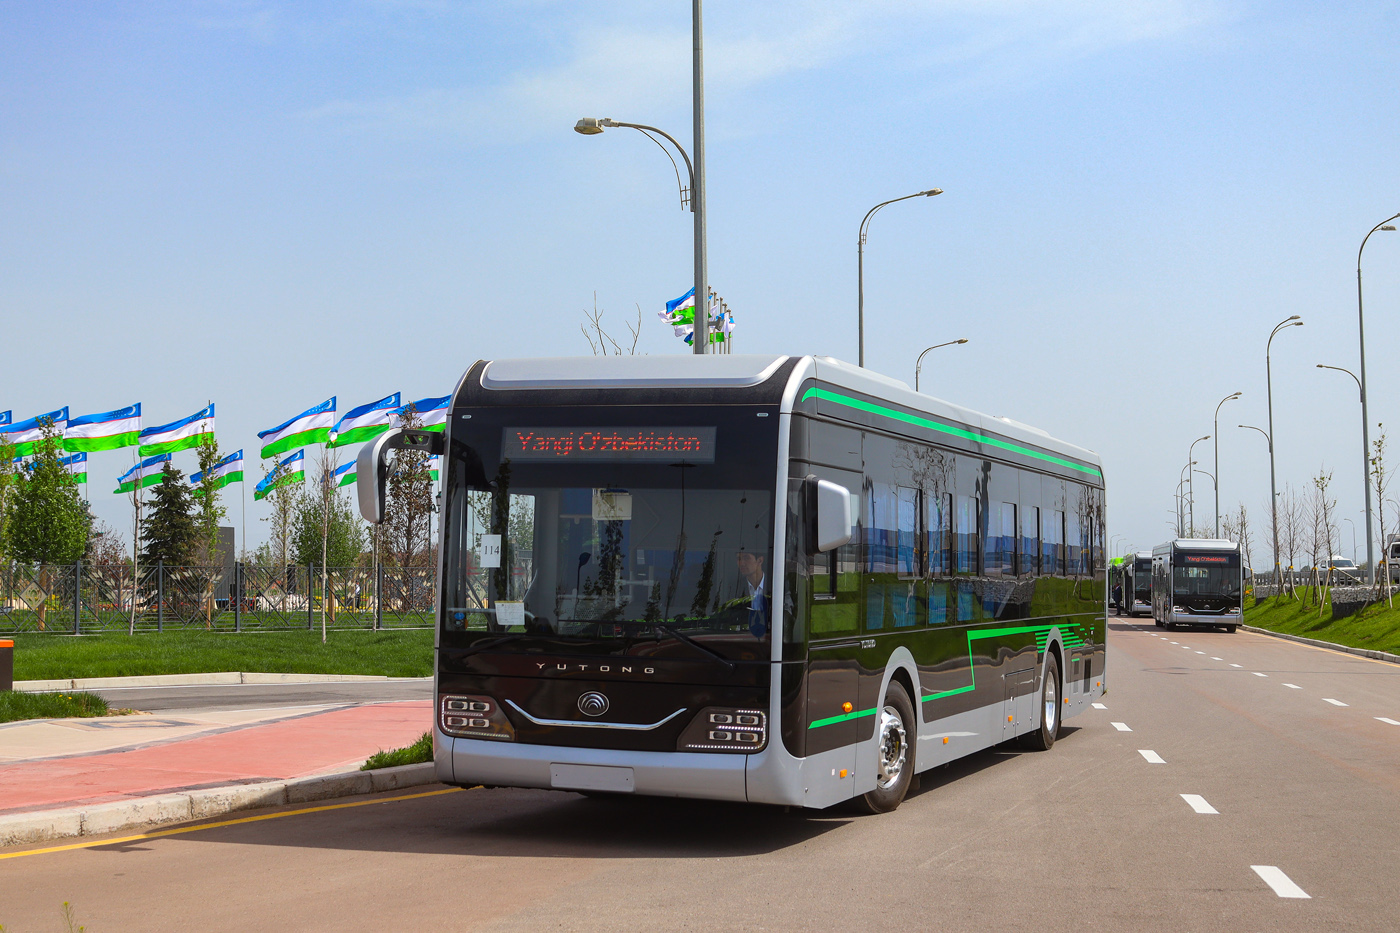 Tashkent — Presentatiom of new buses